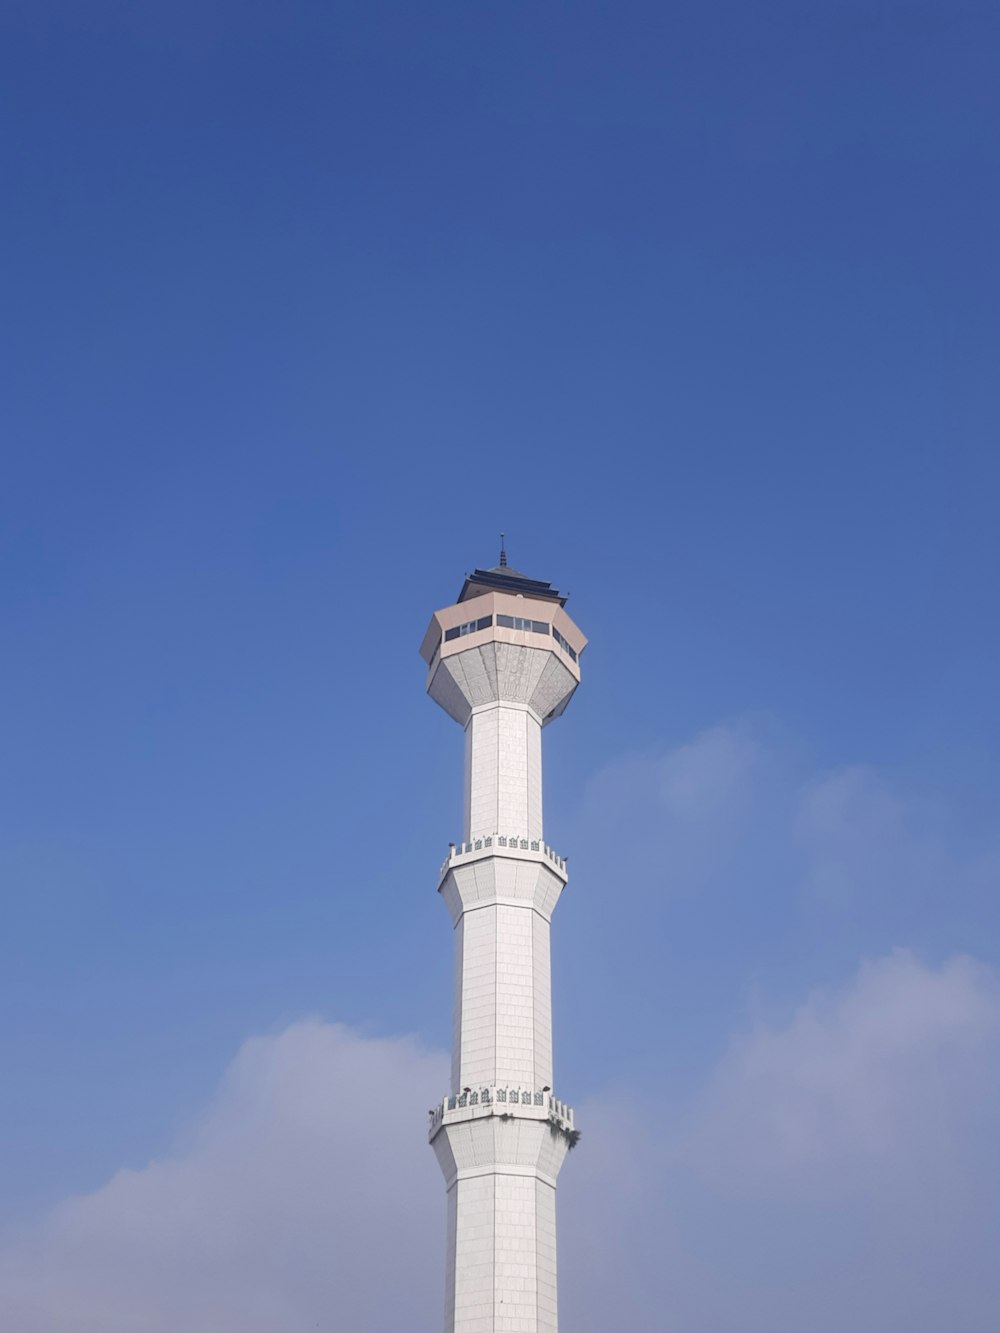 Une grande tour blanche avec une horloge au sommet